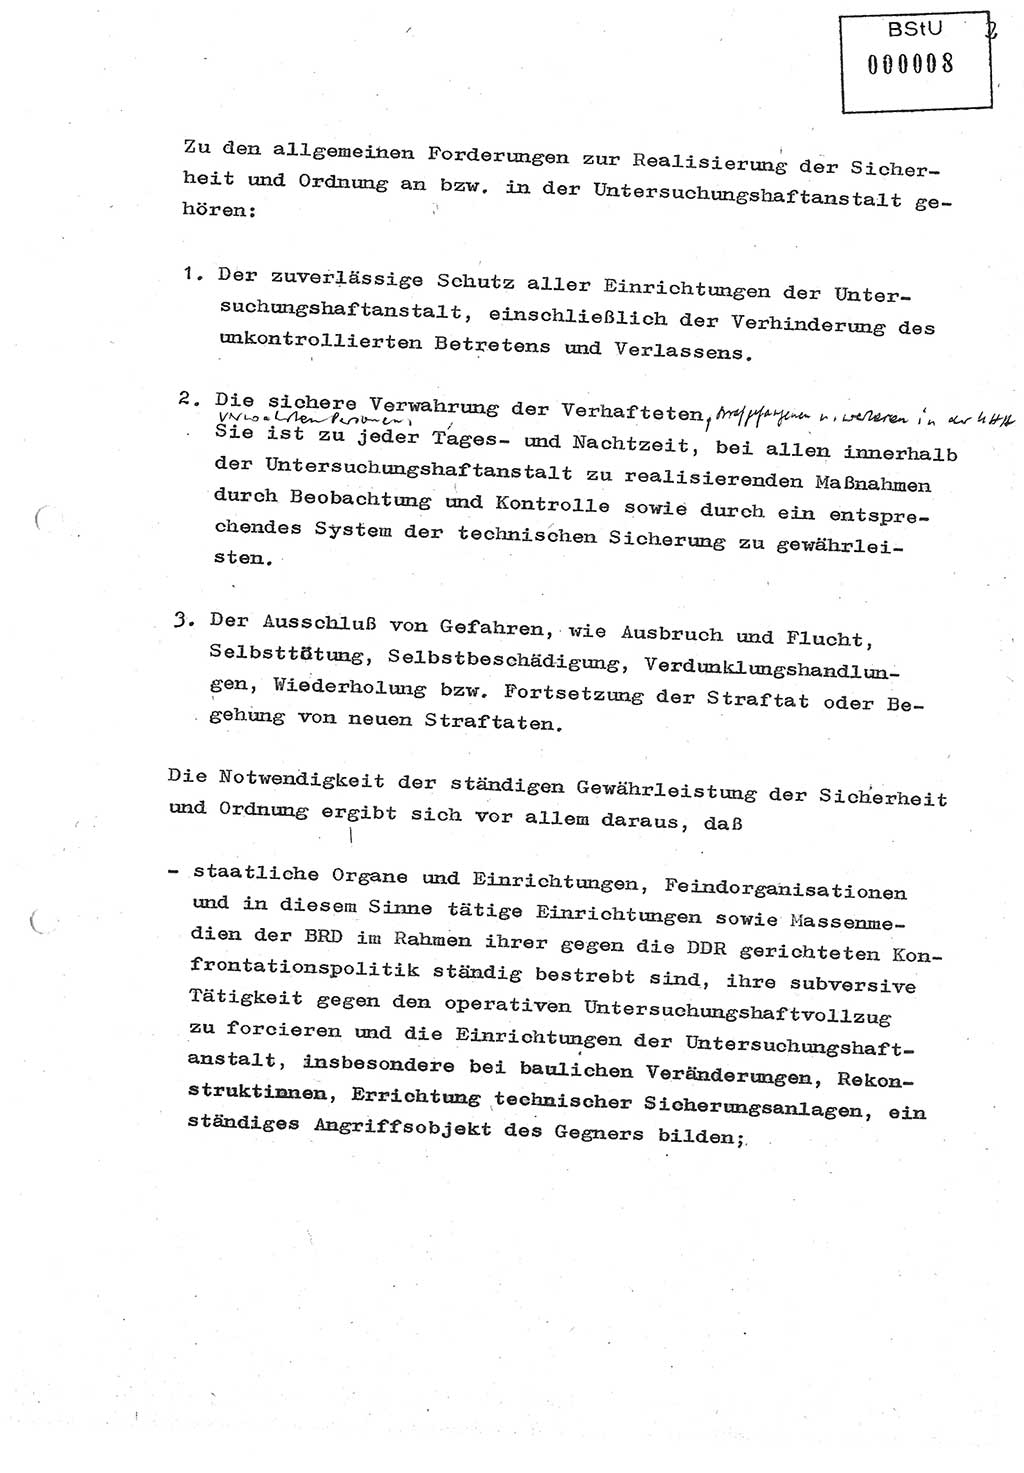 Diplomarbeit (Entwurf) Oberleutnant Peter Parke (Abt. ⅩⅣ), Ministerium für Staatssicherheit (MfS) [Deutsche Demokratische Republik (DDR)], Juristische Hochschule (JHS), Geheime Verschlußsache (GVS) o001-98/86, Potsdam 1986, Seite 8 (Dipl.-Arb. MfS DDR JHS GVS o001-98/86 1986, S. 8)